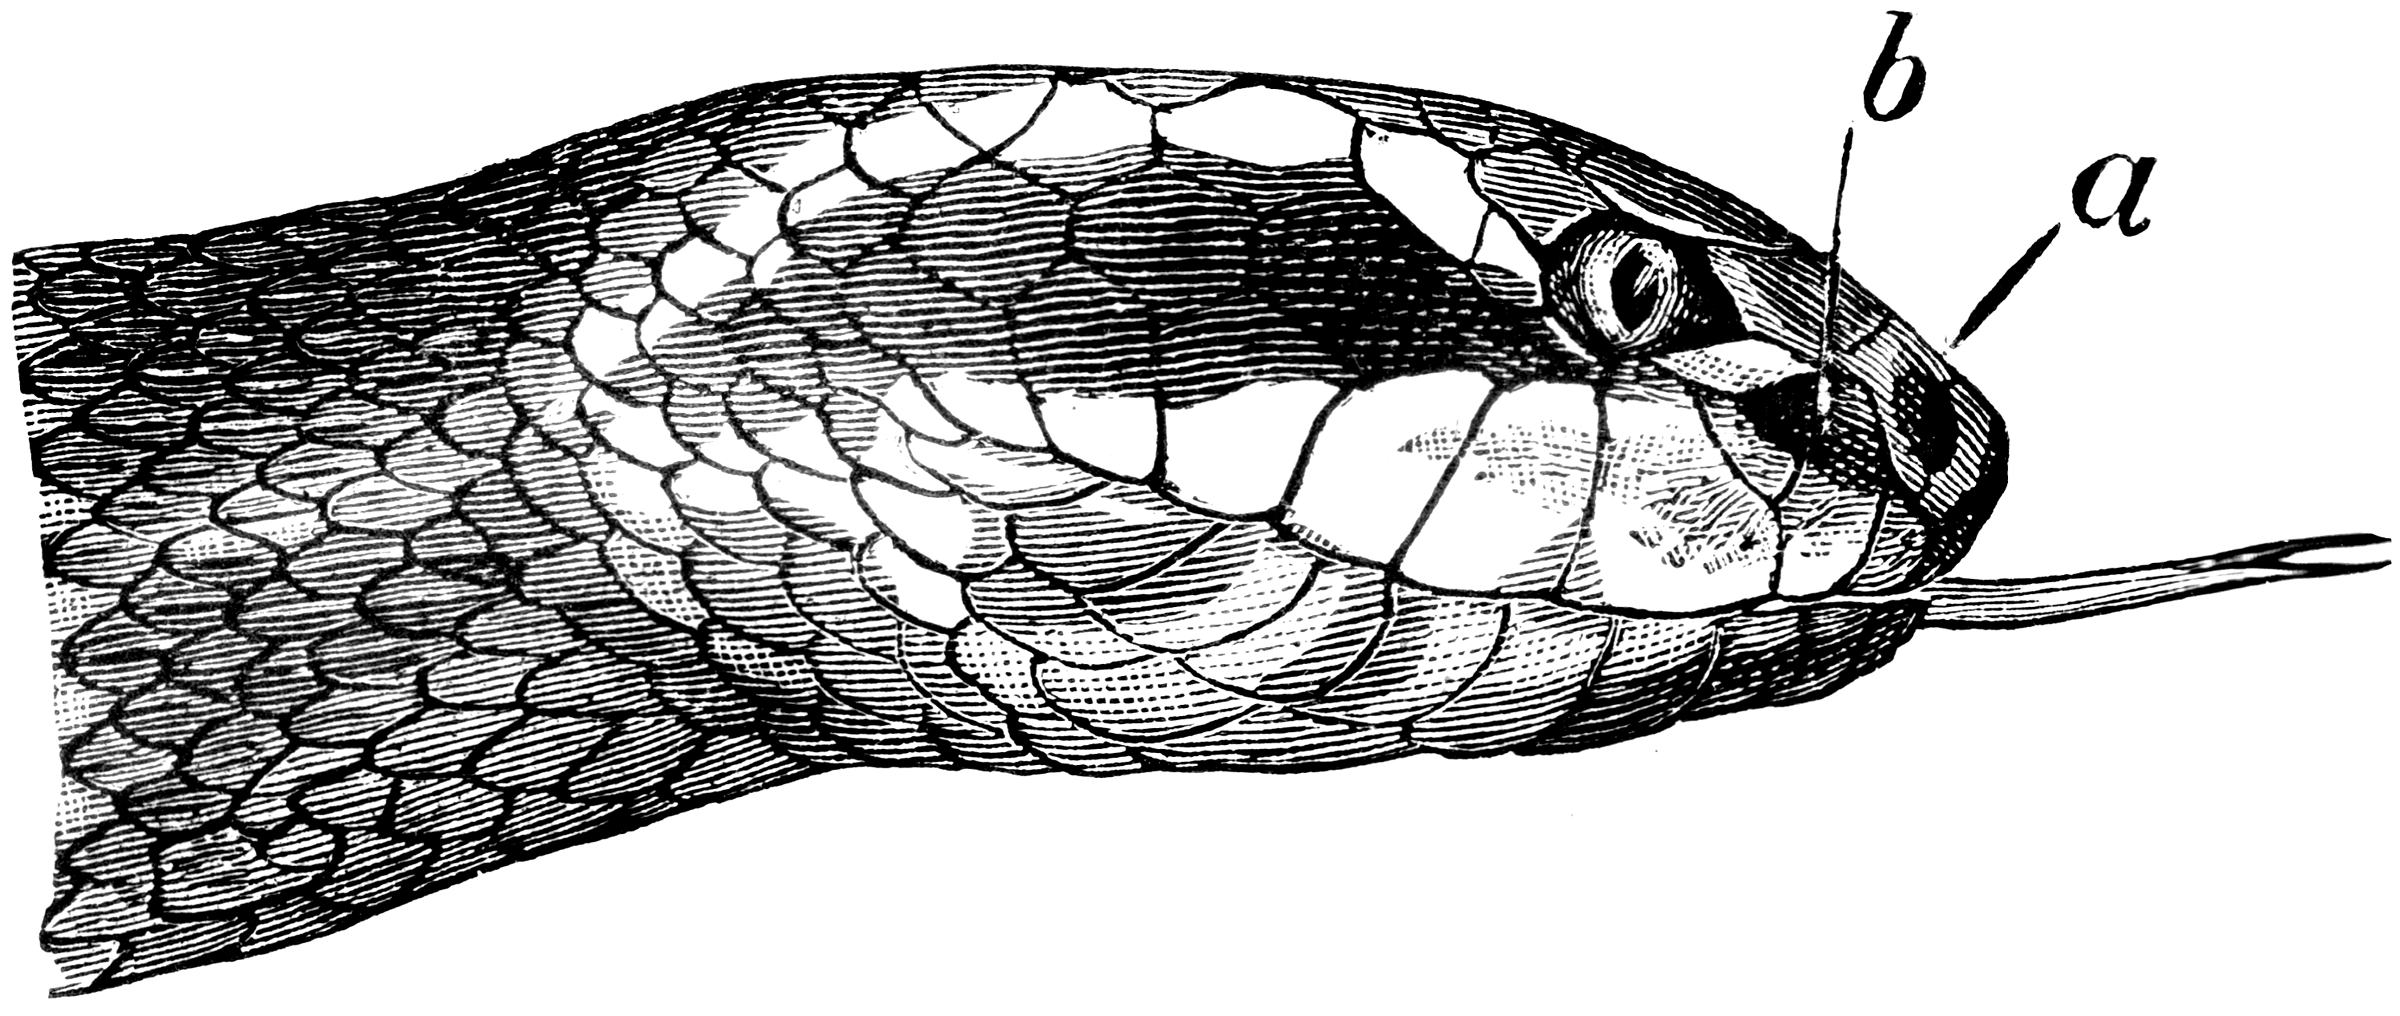 Сколько было голов змея. Голова змеи. Голова змеи рисунок. Голова змеи сверху. Голова змеи сверху рисунок.